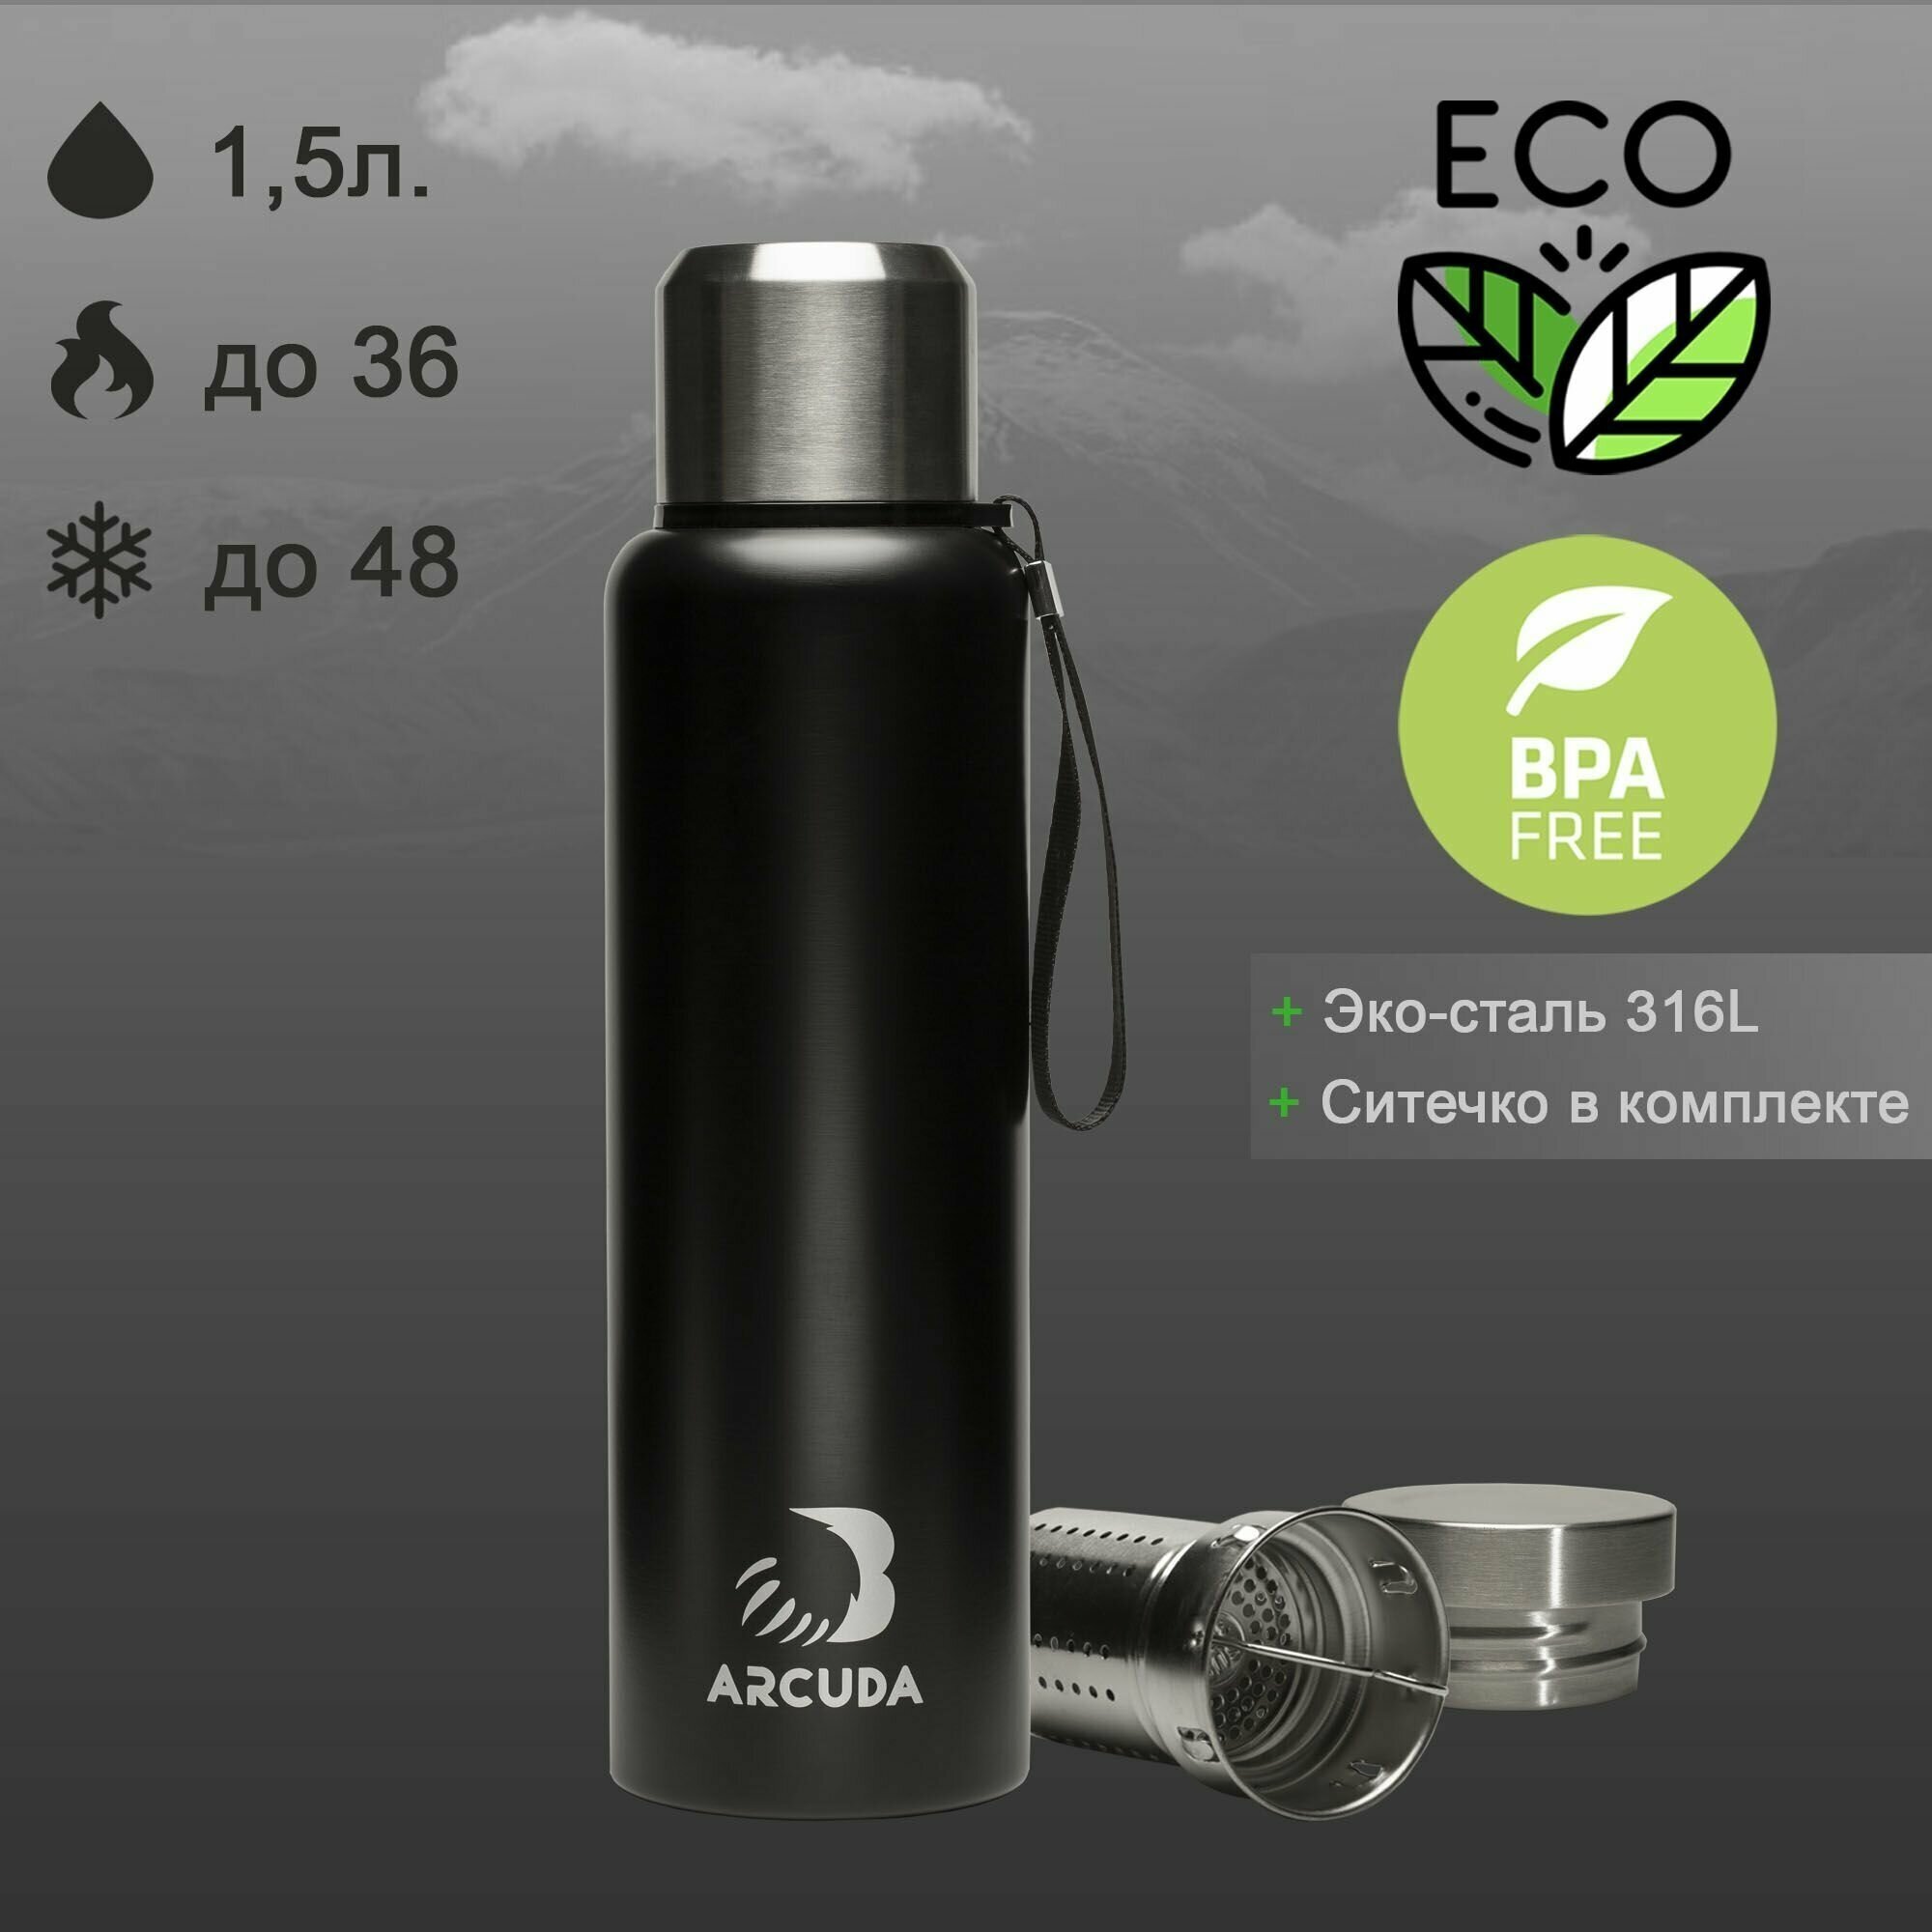 Термос вакуумный ARCUDA ARC-Z85 Eco seria, крышка-чашка, 1.5 литра, черный